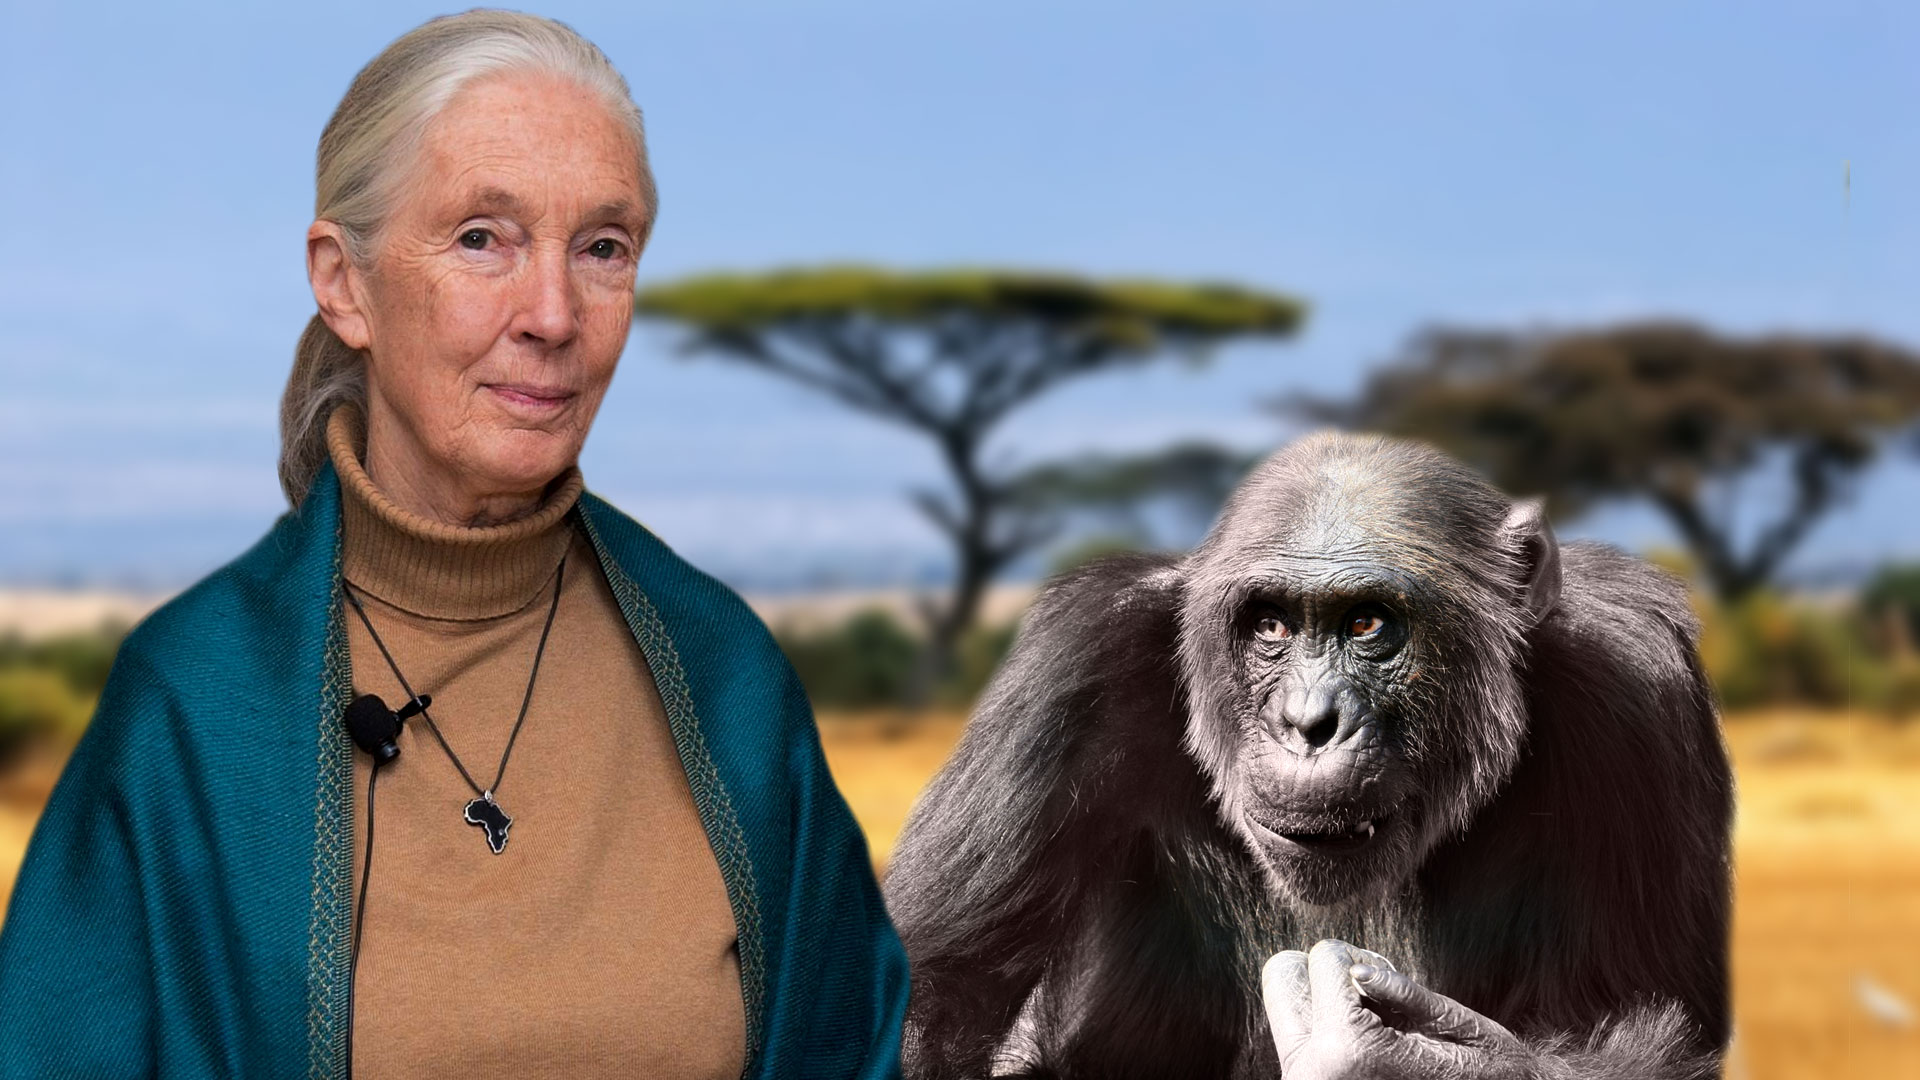 Jane Goodall est une primatologue, éthologue et anthropologiste britannique. Elle a consacré sa vie à l’étude des chimpanzés et publié de nombreux travaux qui ont transformé la vision que les Hommes se font des primates et des animaux en général. Dans les années 1960, en étudiant les chimpanzés du parc national Gombe, en Tanzanie, elle découvre, notamment, qu'ils savent fabriquer un outil, en l'occurrence un attrape-fourmis. Grande militante du droit des animaux, elle est messagère des Nations unies pour la paix. © Nick Stepowyj, Flickr, licence CC 2.0 ;&nbsp;Martin Pettitt, Flickr, licence CC 2.0